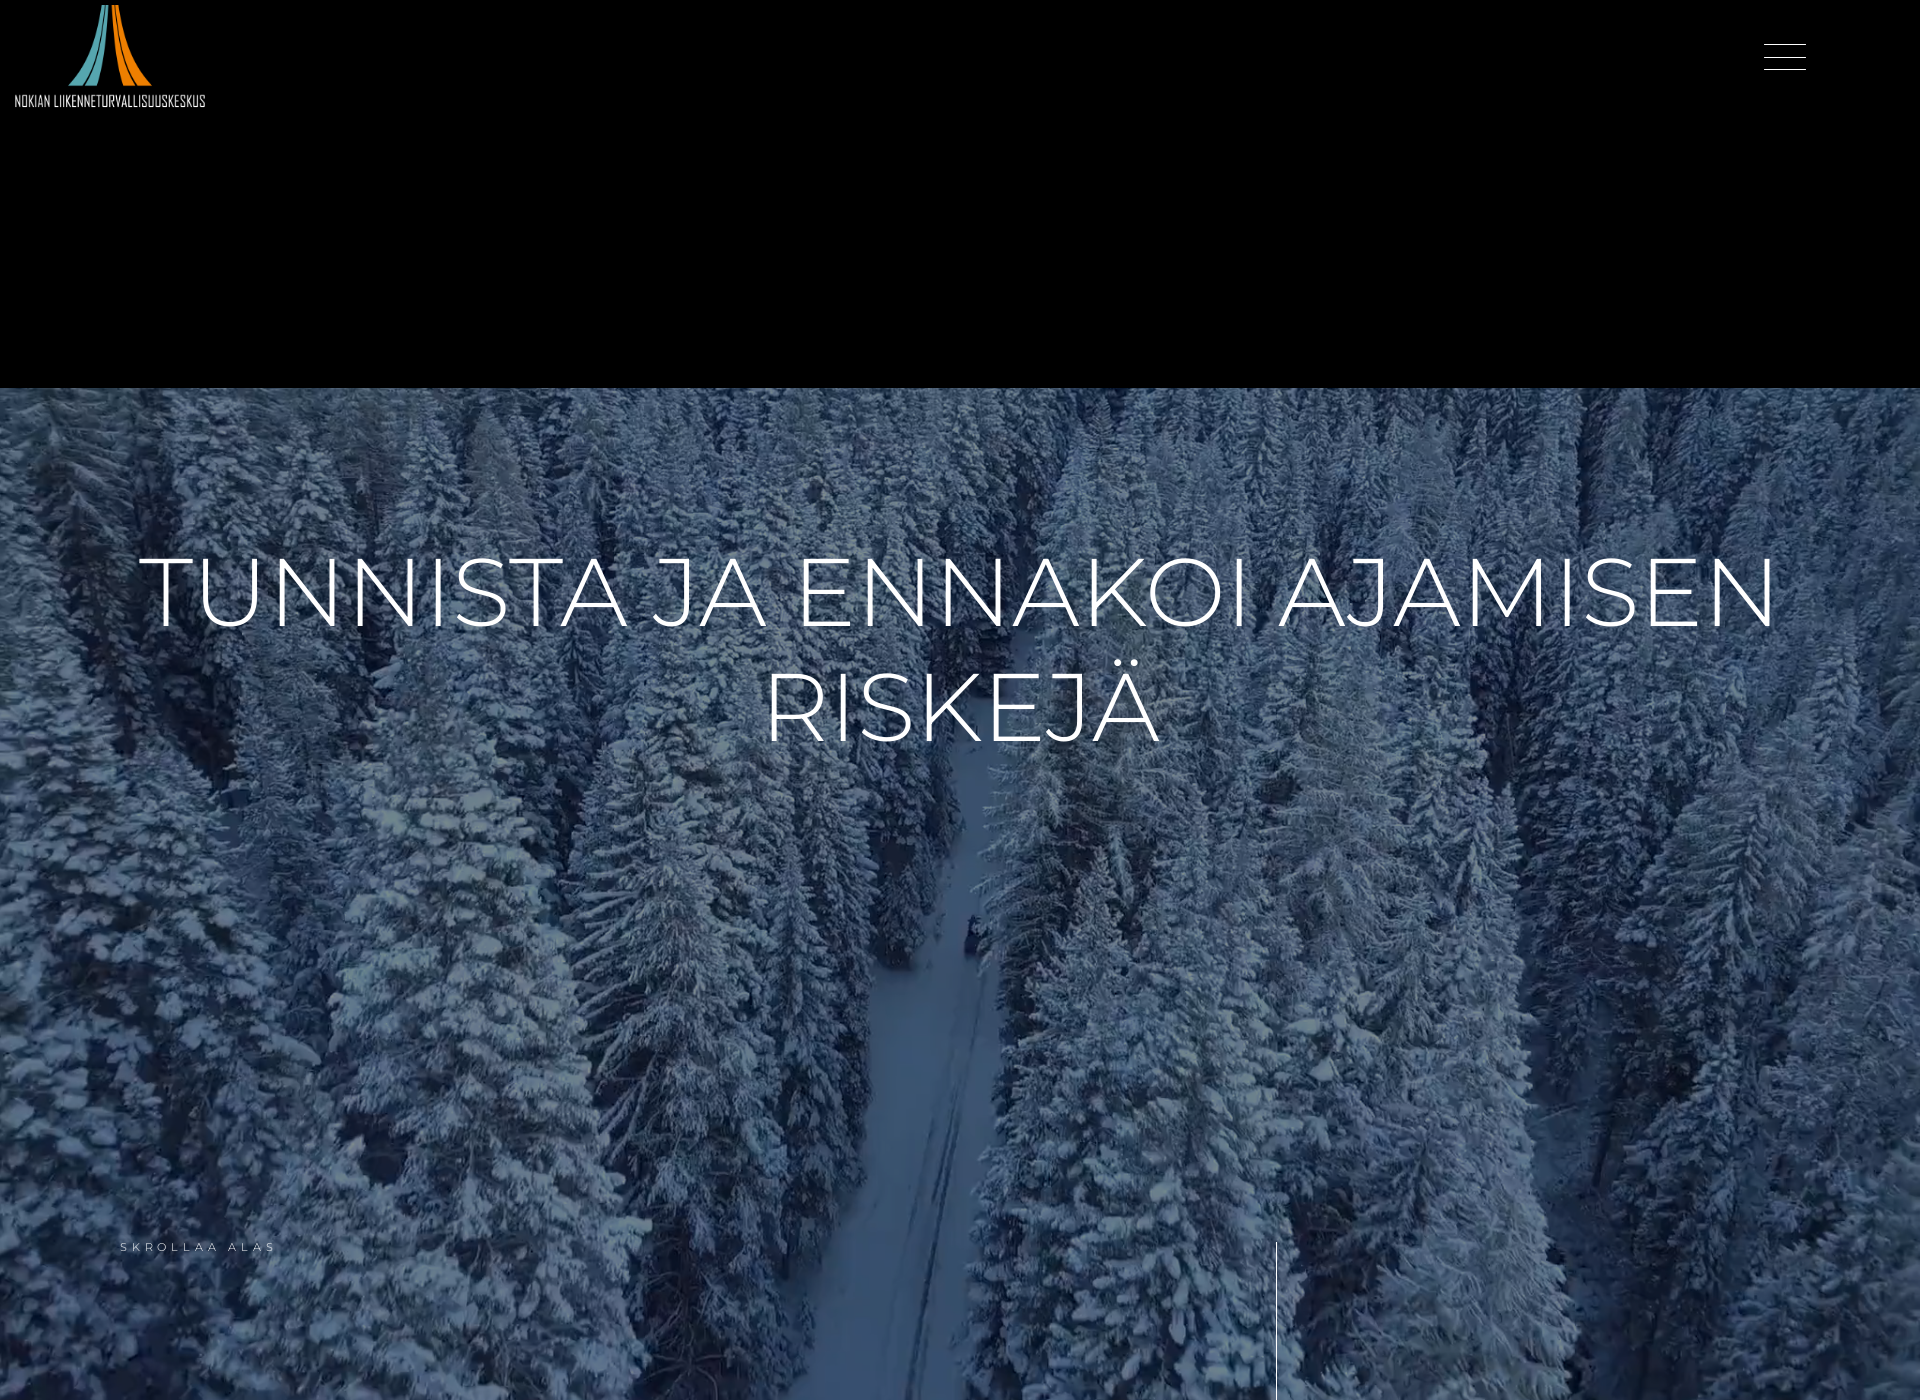 Näyttökuva nokianajoharjoittelurata.fi